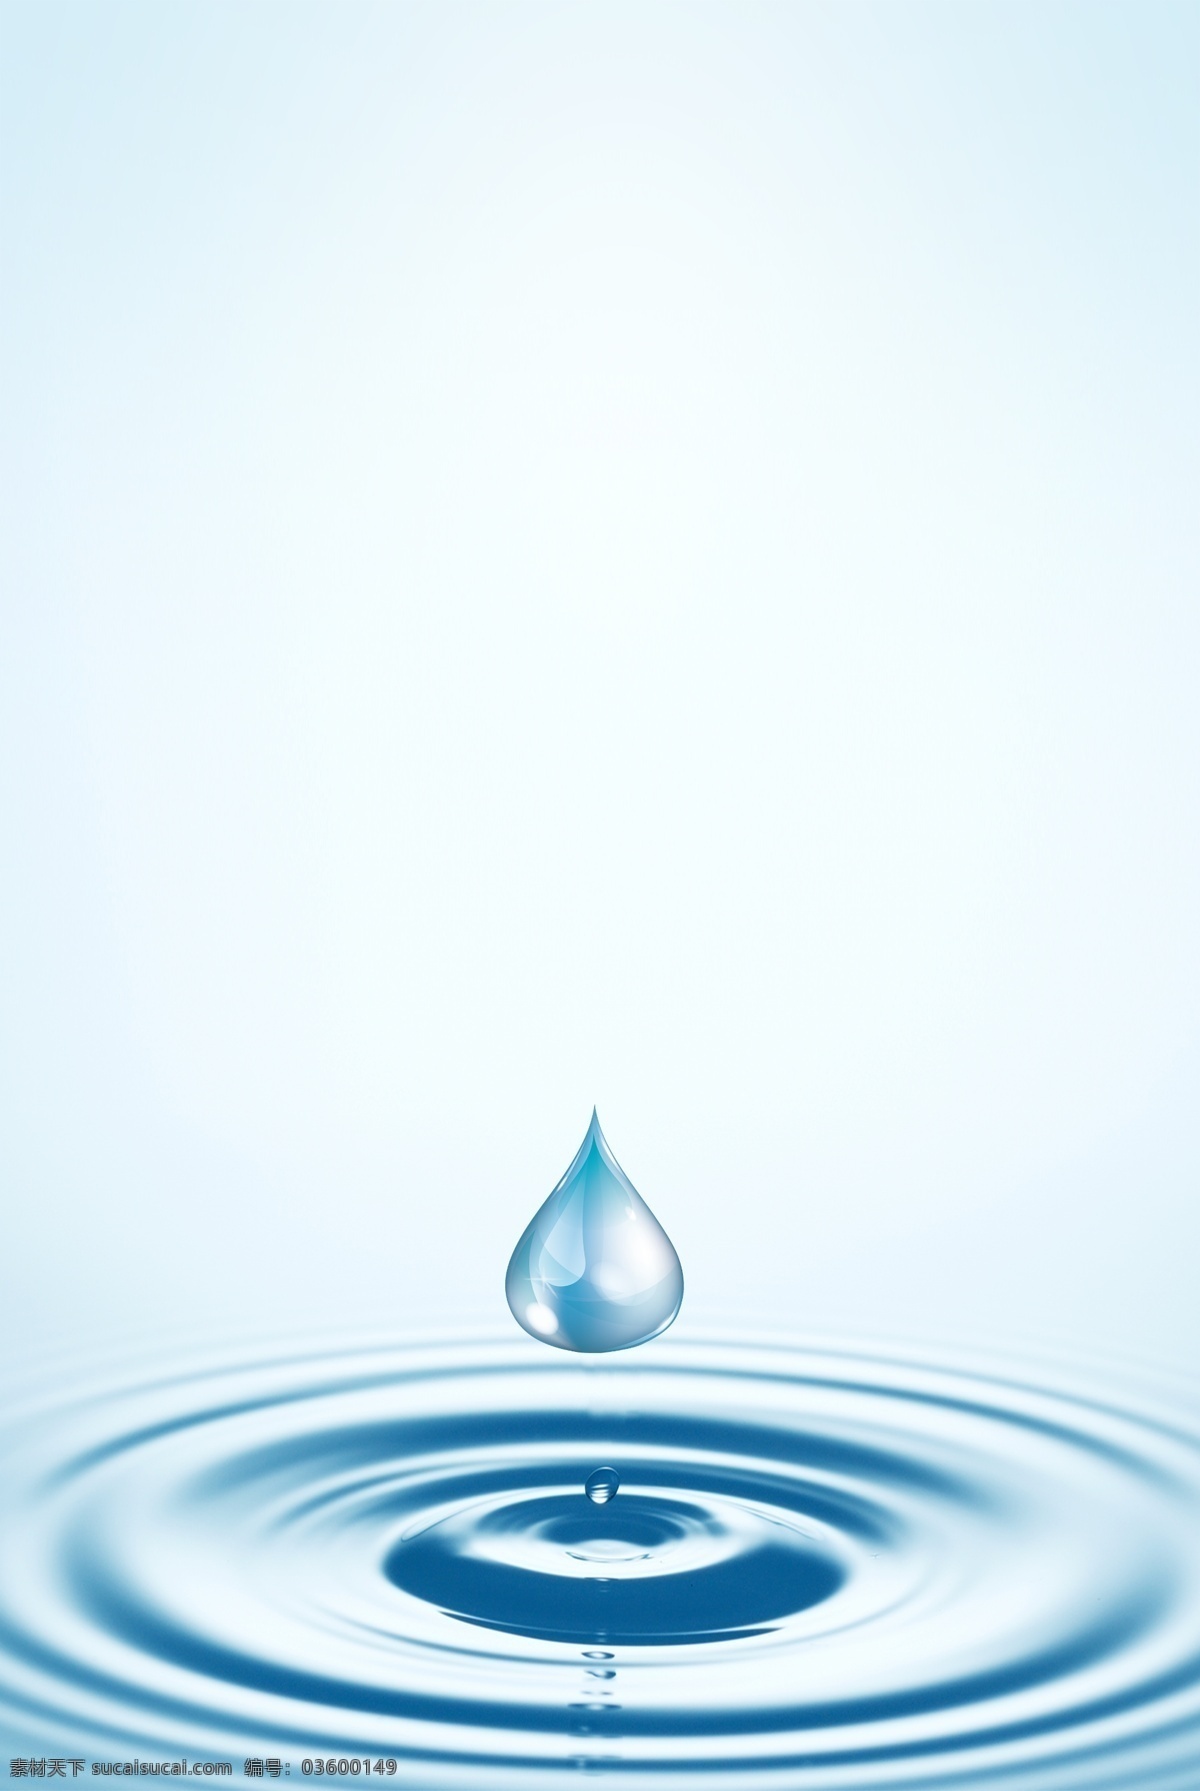 水滴 滴落 广告 背景 蓝色 小清新 眼药水 分层 背景素材